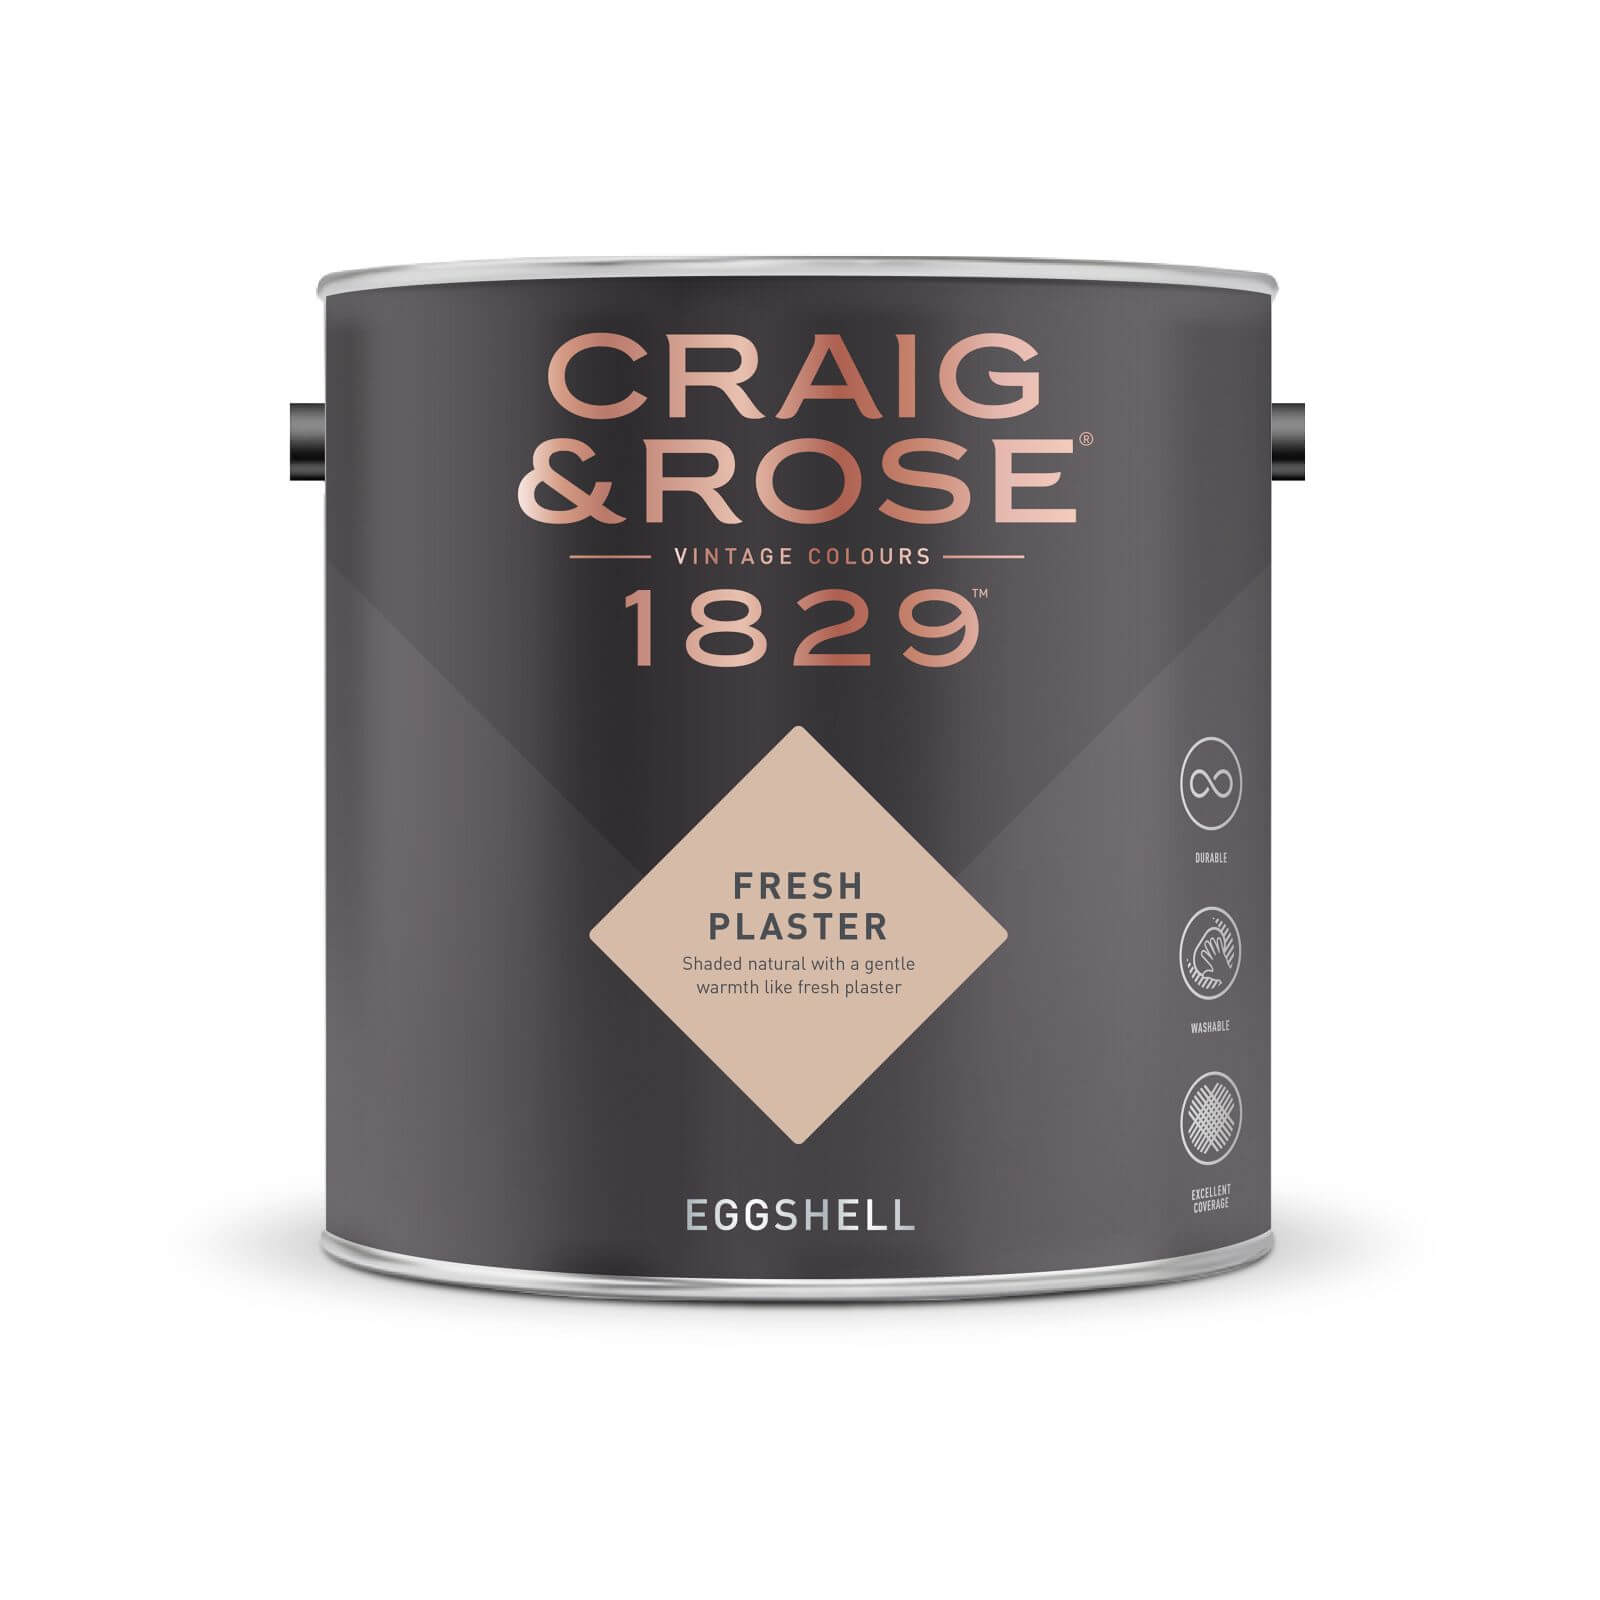 Craig & Rose 1829 Eggshell Paint Fresh Plaster - 2.5L